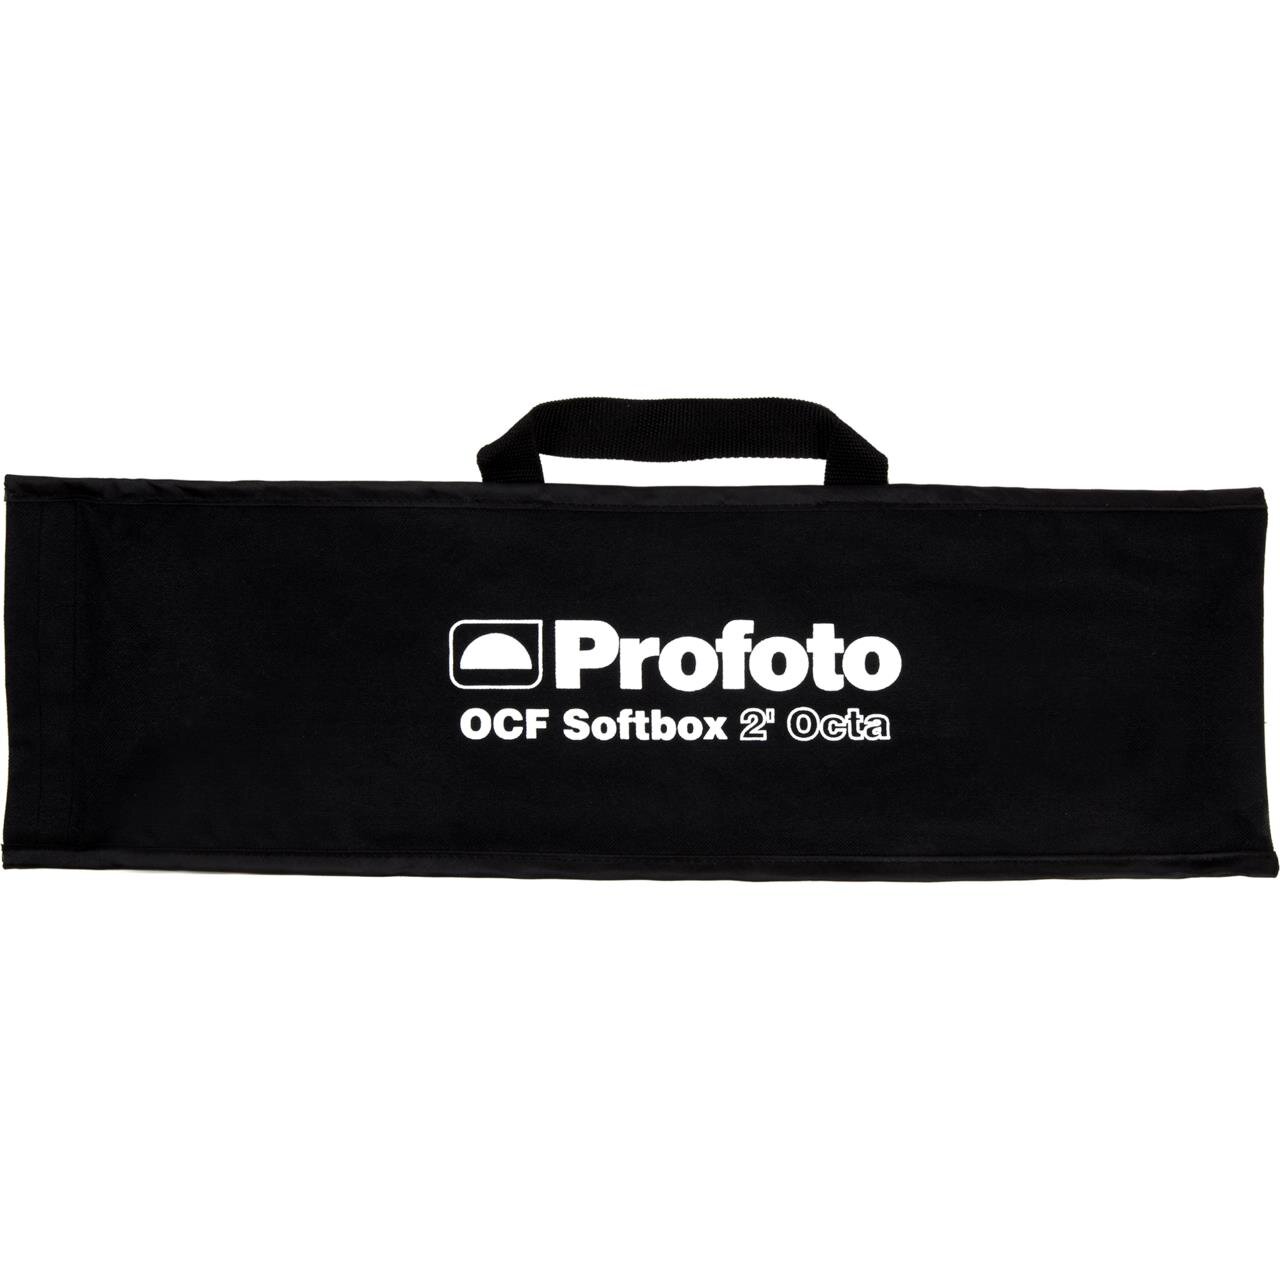 101211_f_profoto-ocf-softbox-2-octa-bag_productimage.png.jpeg